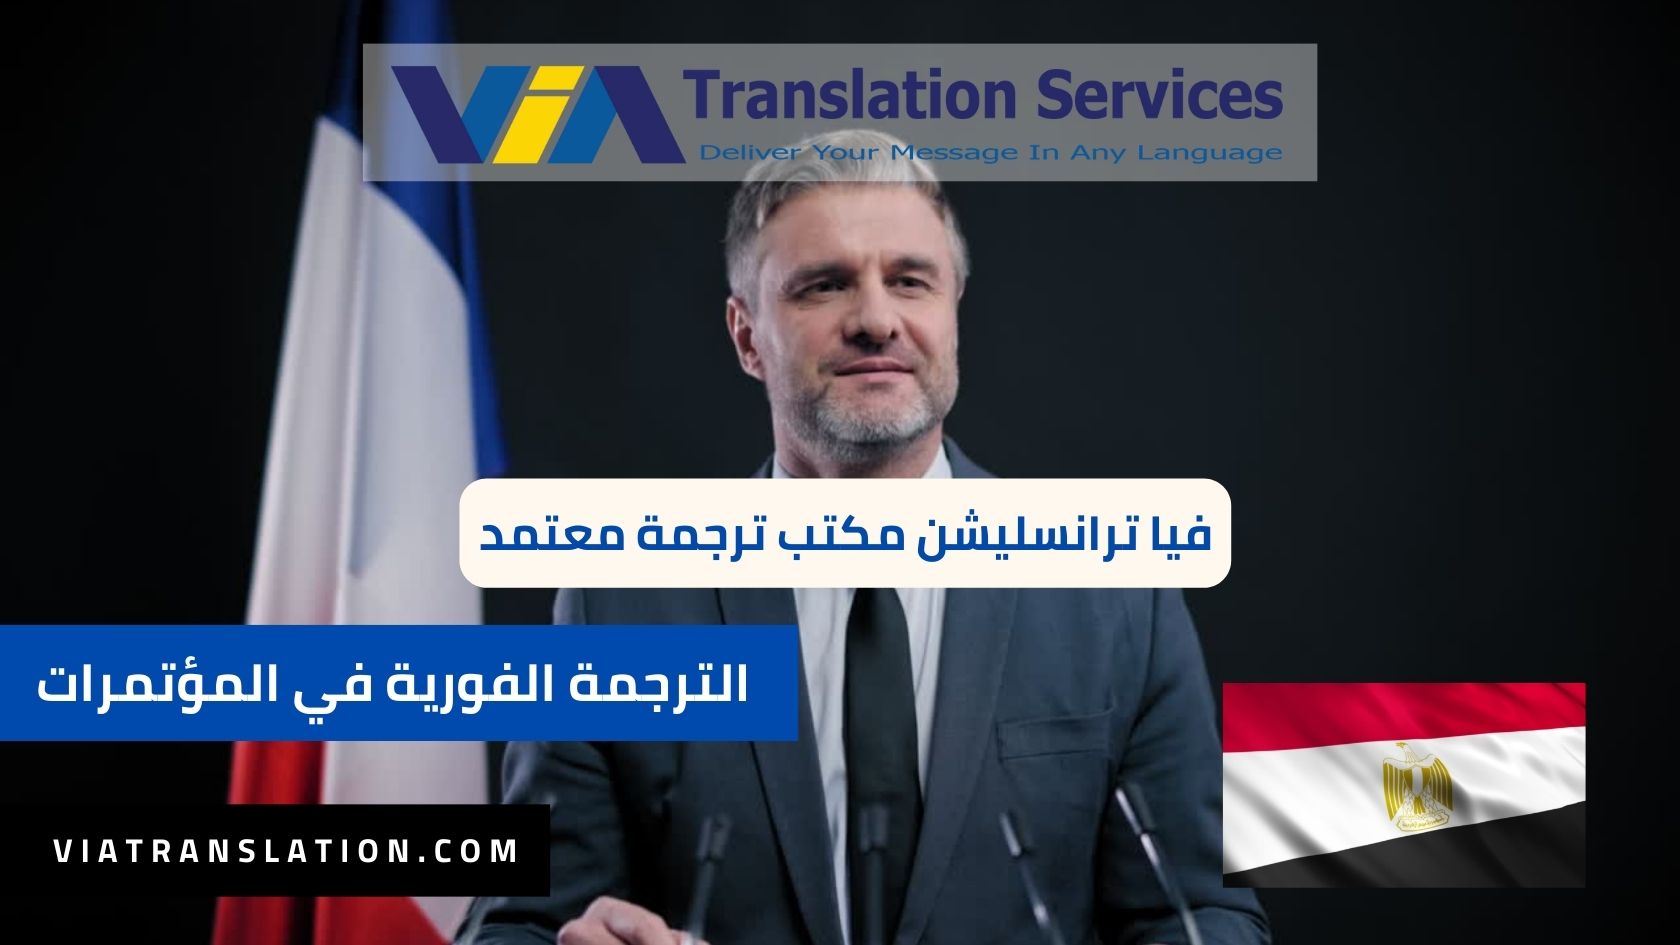 خدمات الترجمة الفورية في المؤتمرات وتأجير أجهزة الترجمة في المؤتمرات الدولية